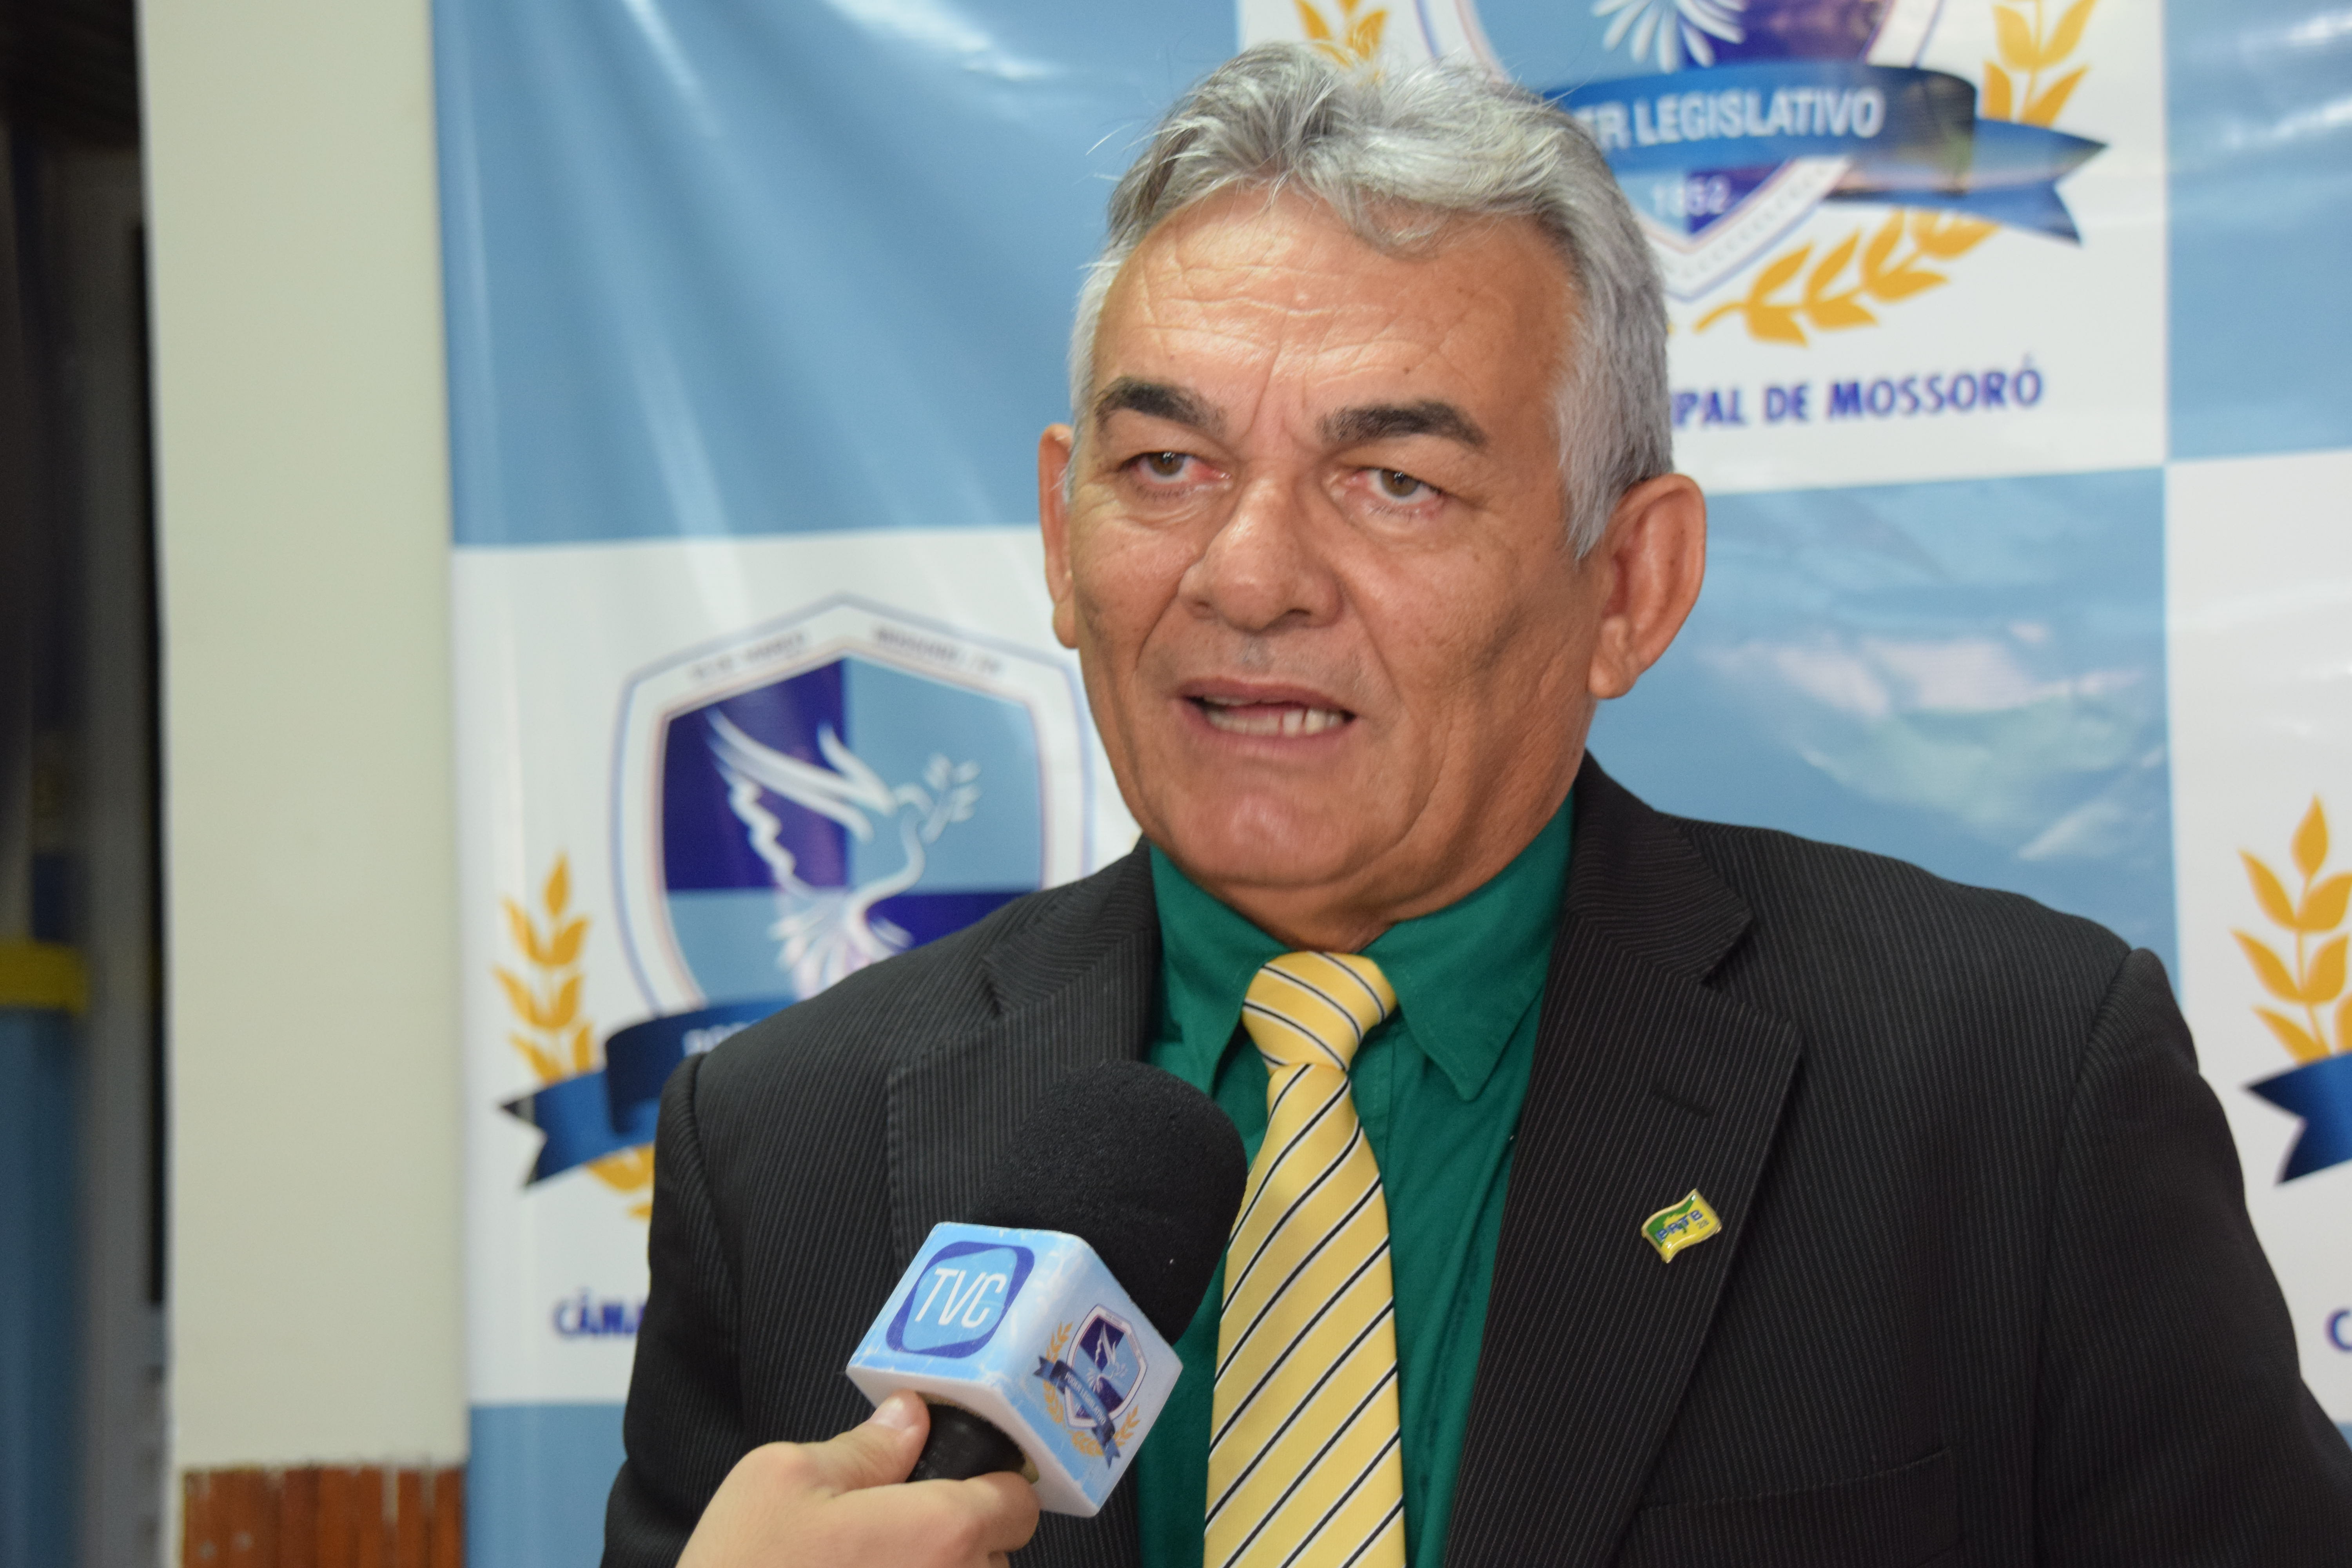 Vereador Manoel Bezerra fala sobre dificuldades na zona rural de Mossoró